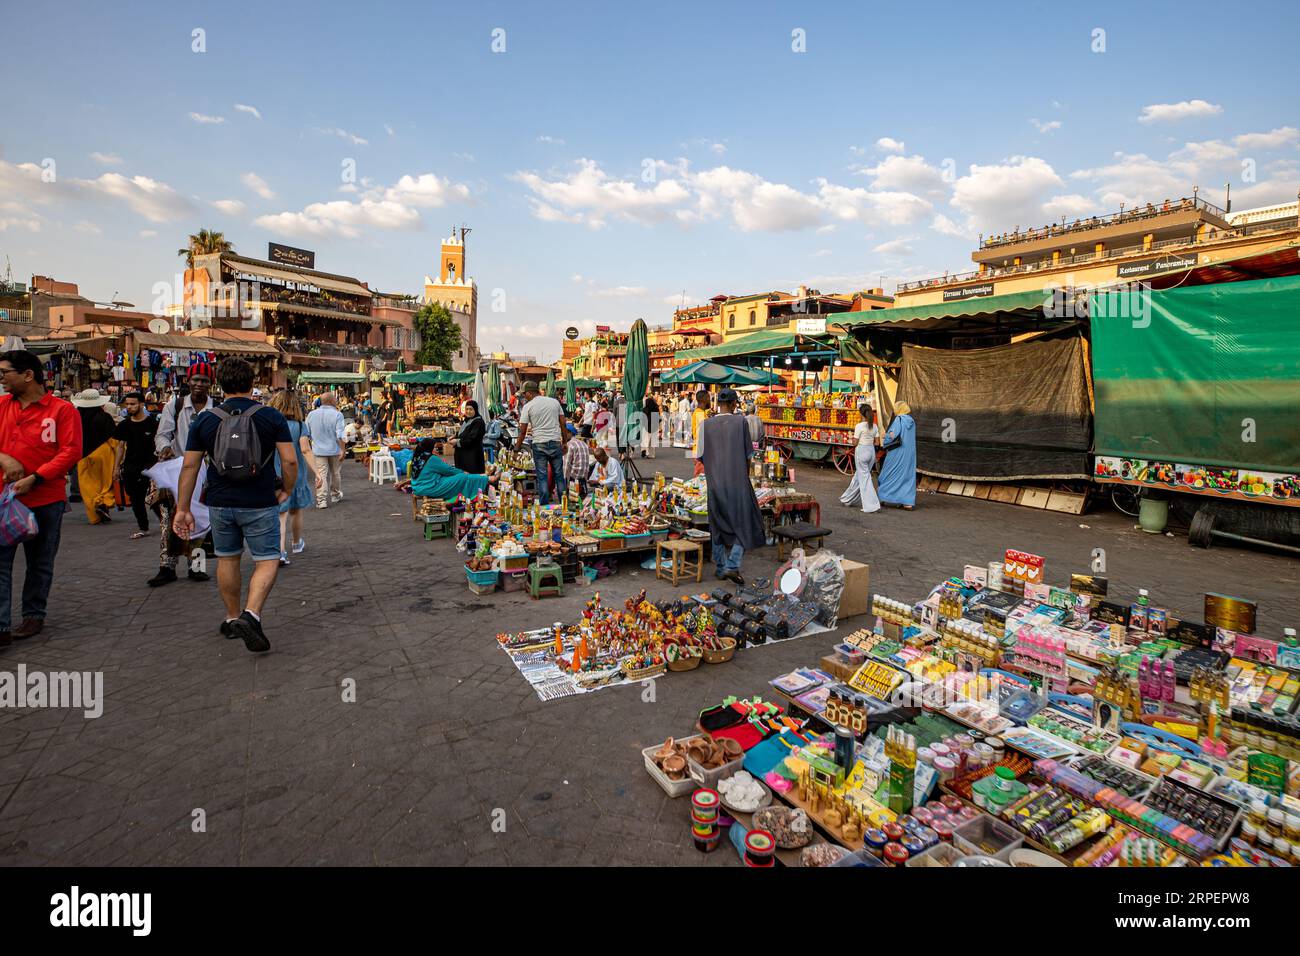 Marocco - Marrakech - Patrimonio dell'Umanità dell'UNESCO - la famosa piazza Jemaa El Fnaa nel centro della medina (città vecchia) Foto Stock